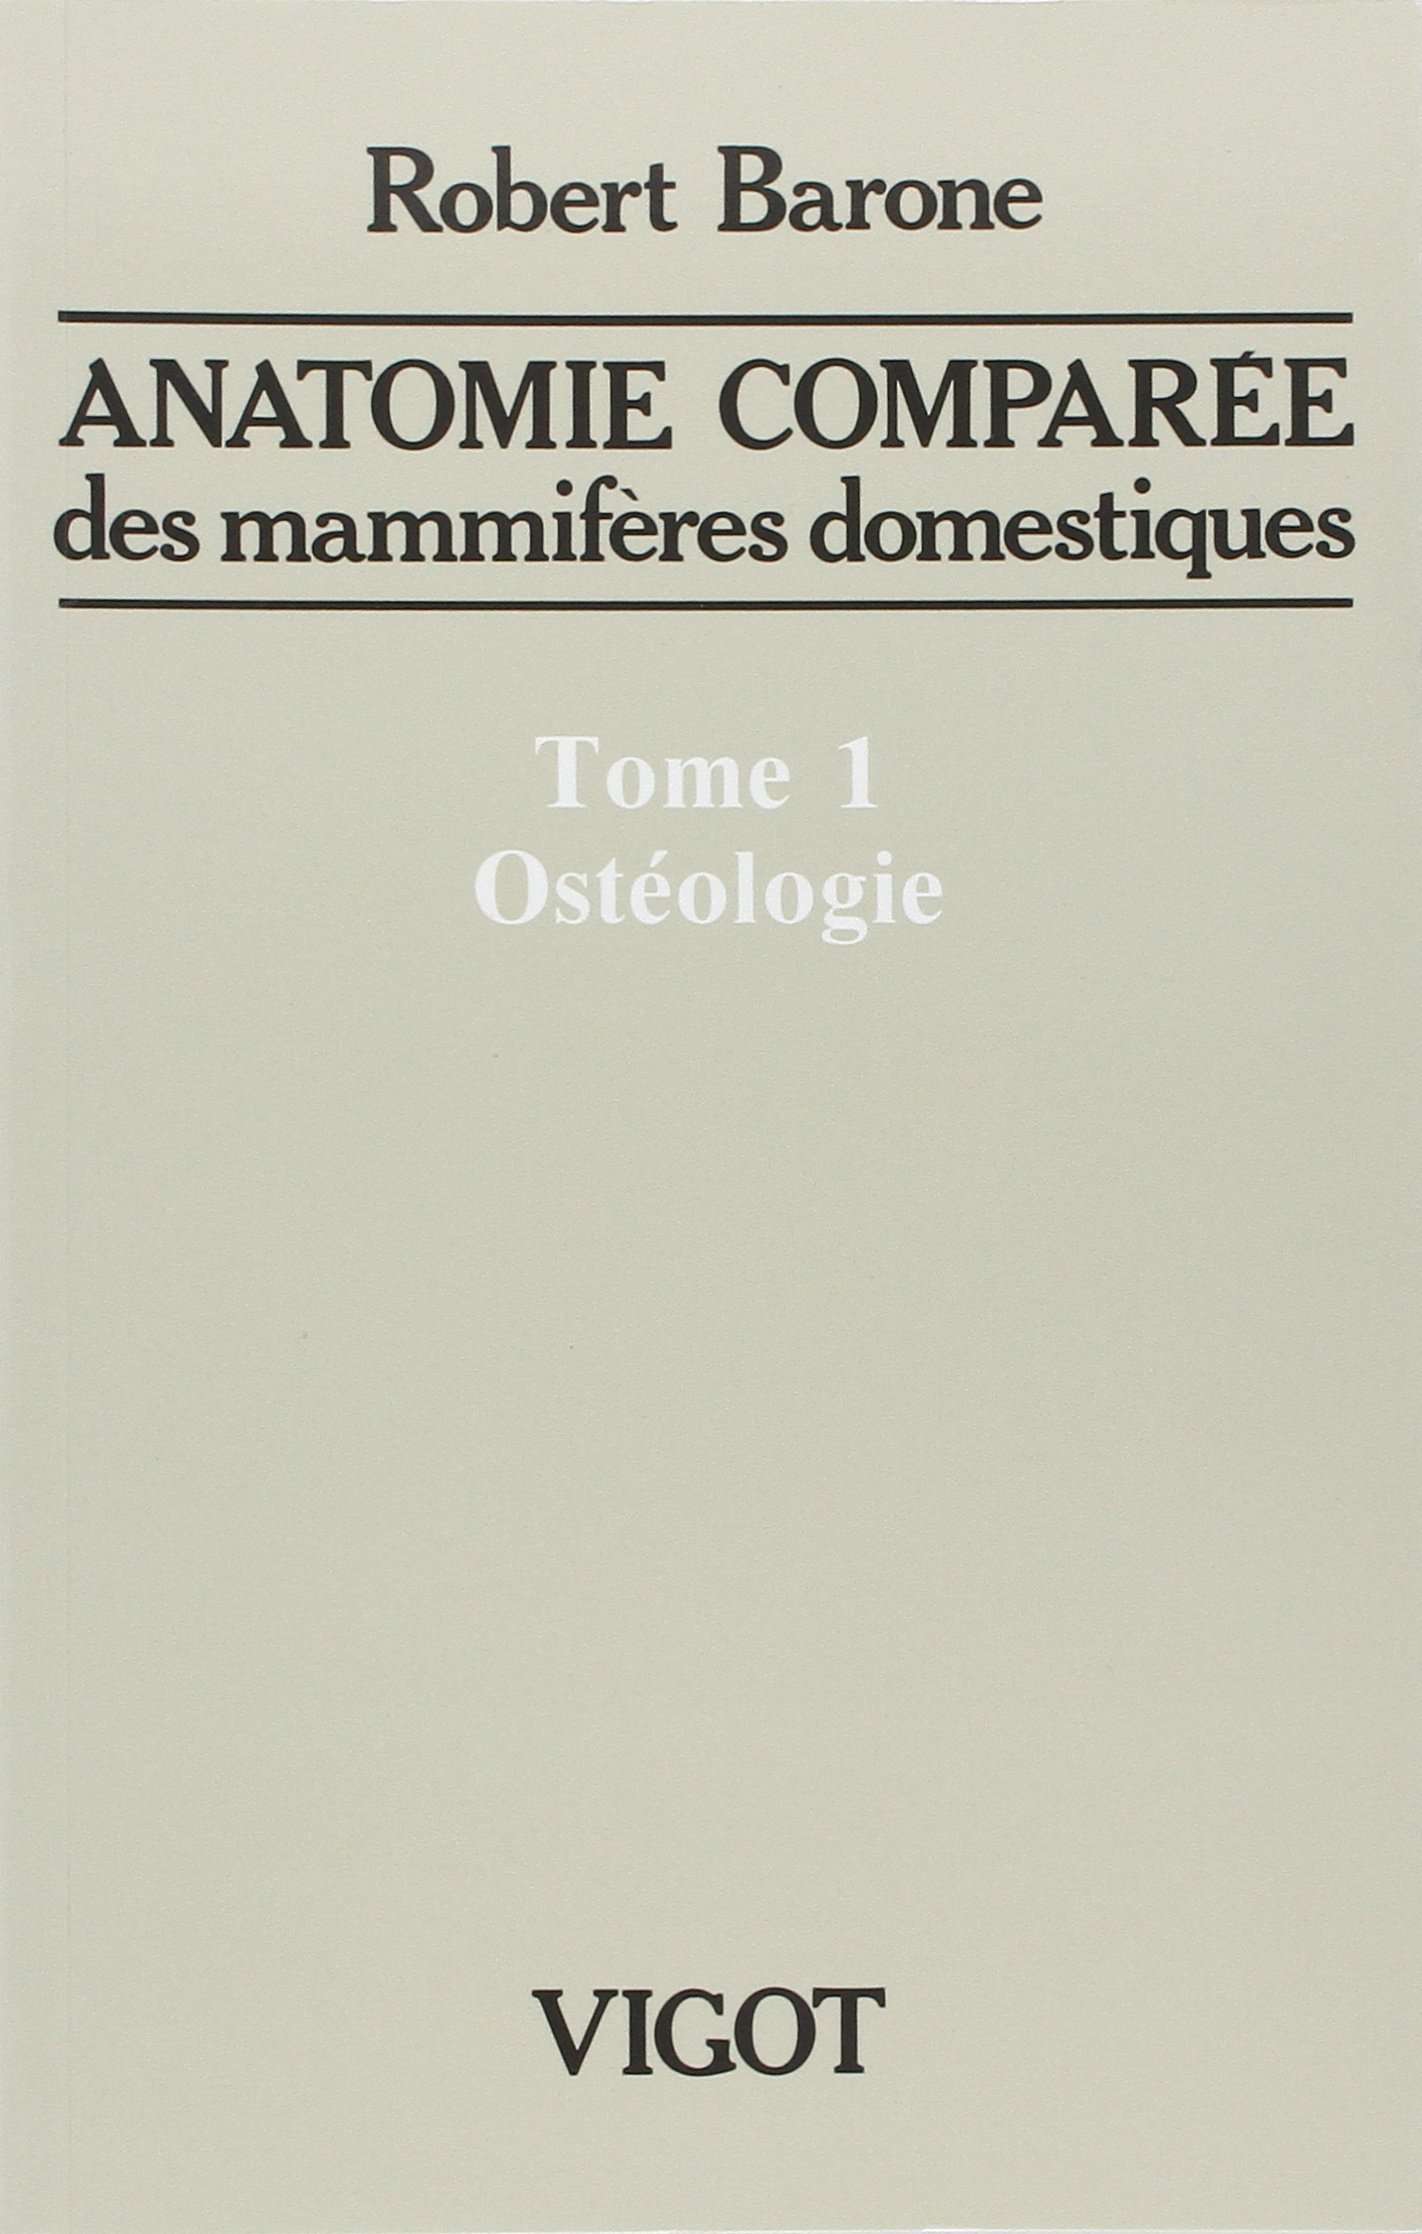 T. 1 : Ostéologie. Anatomie comparée des mammifères domestiques, 2010.